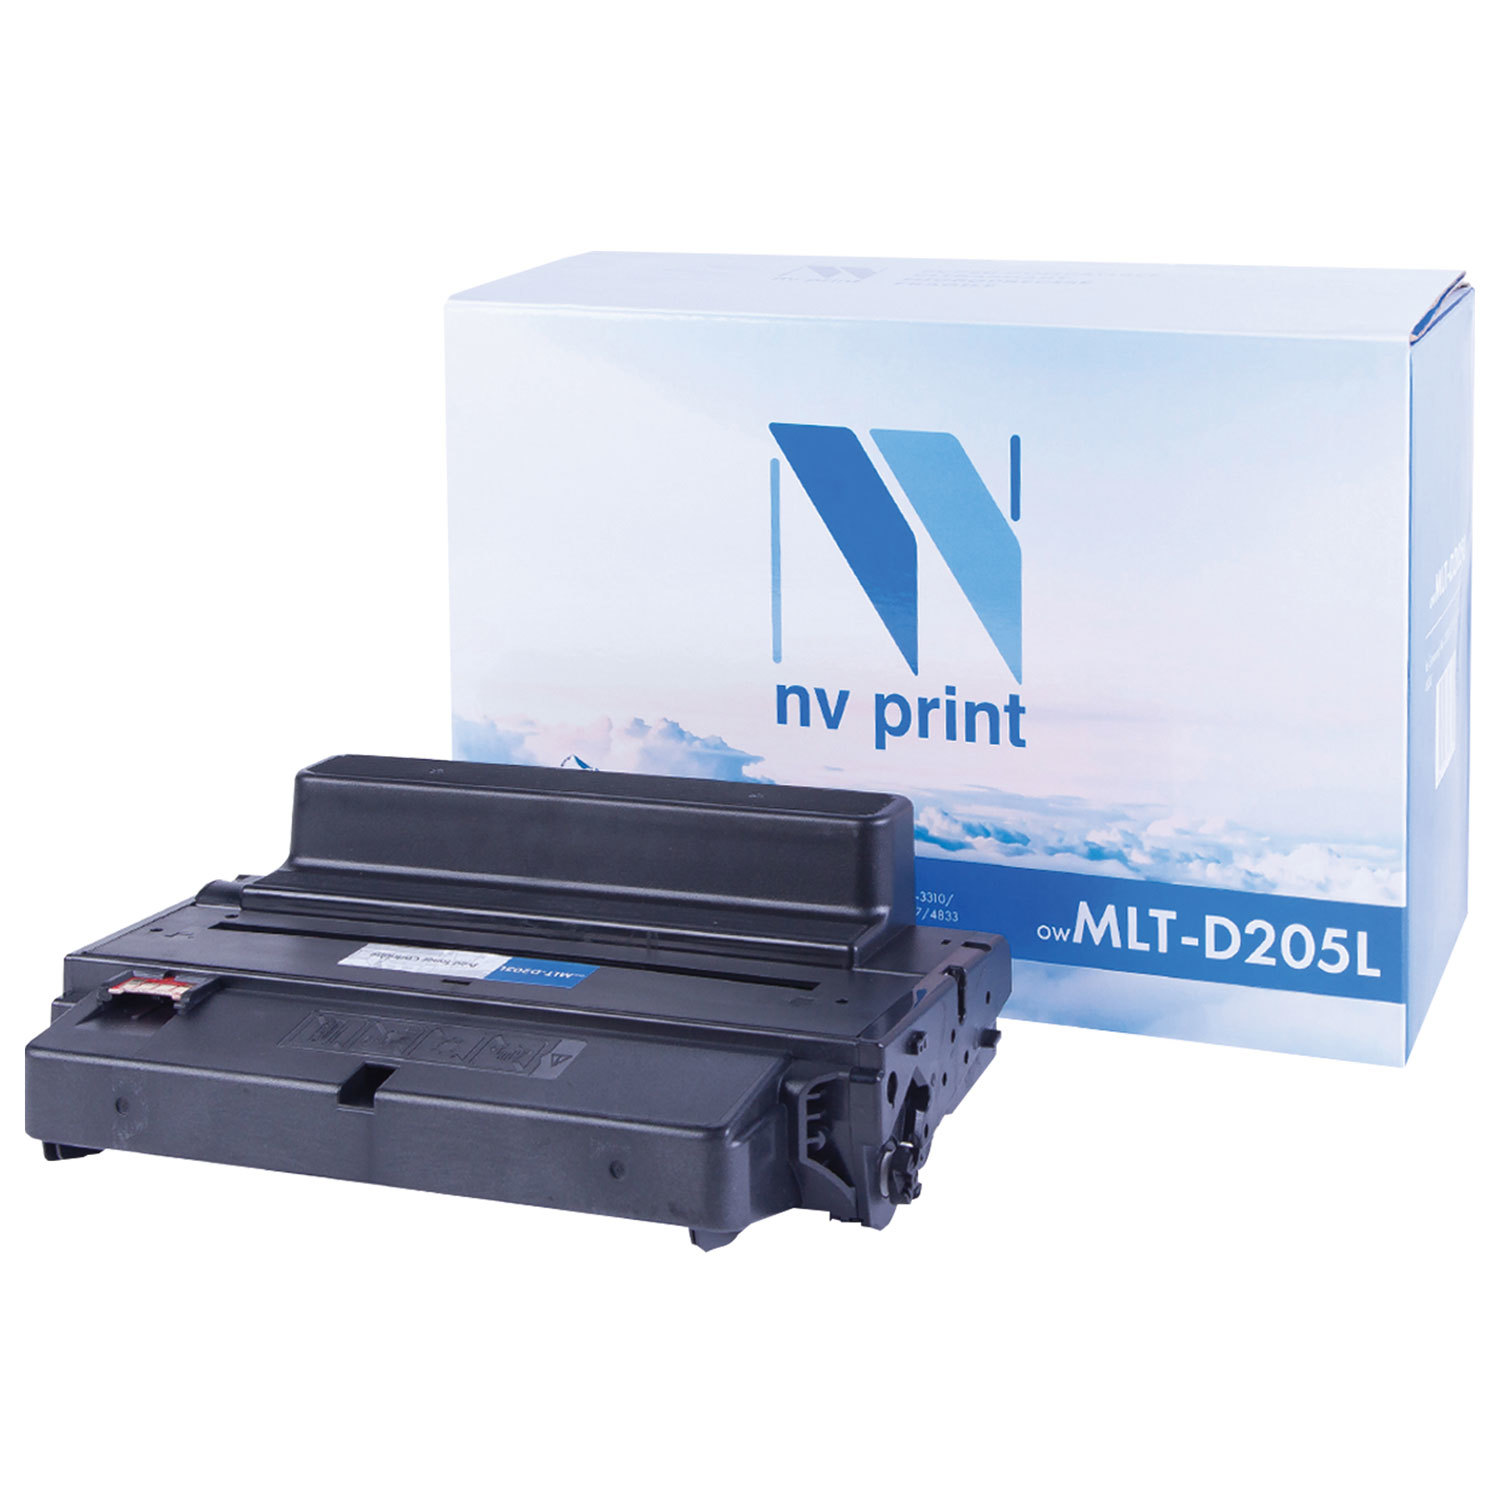  NV PRINT NV-MLT-D205L